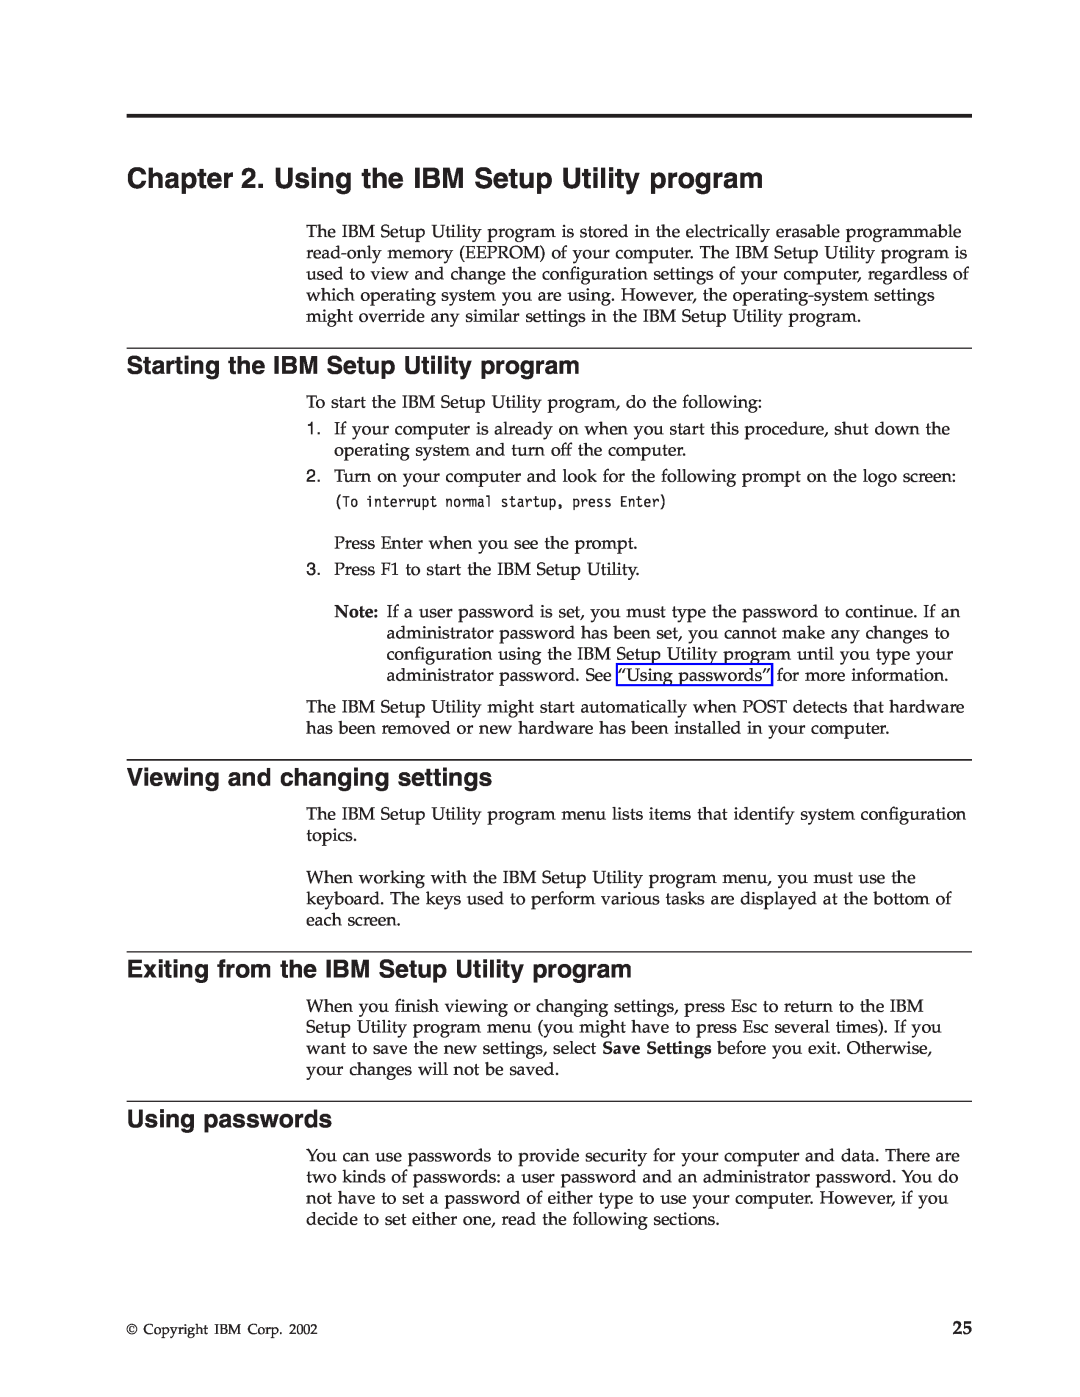 IBM 2289, 6824 Using the IBM Setup Utility program, Starting the IBM Setup Utility program, Viewing and changing settings 